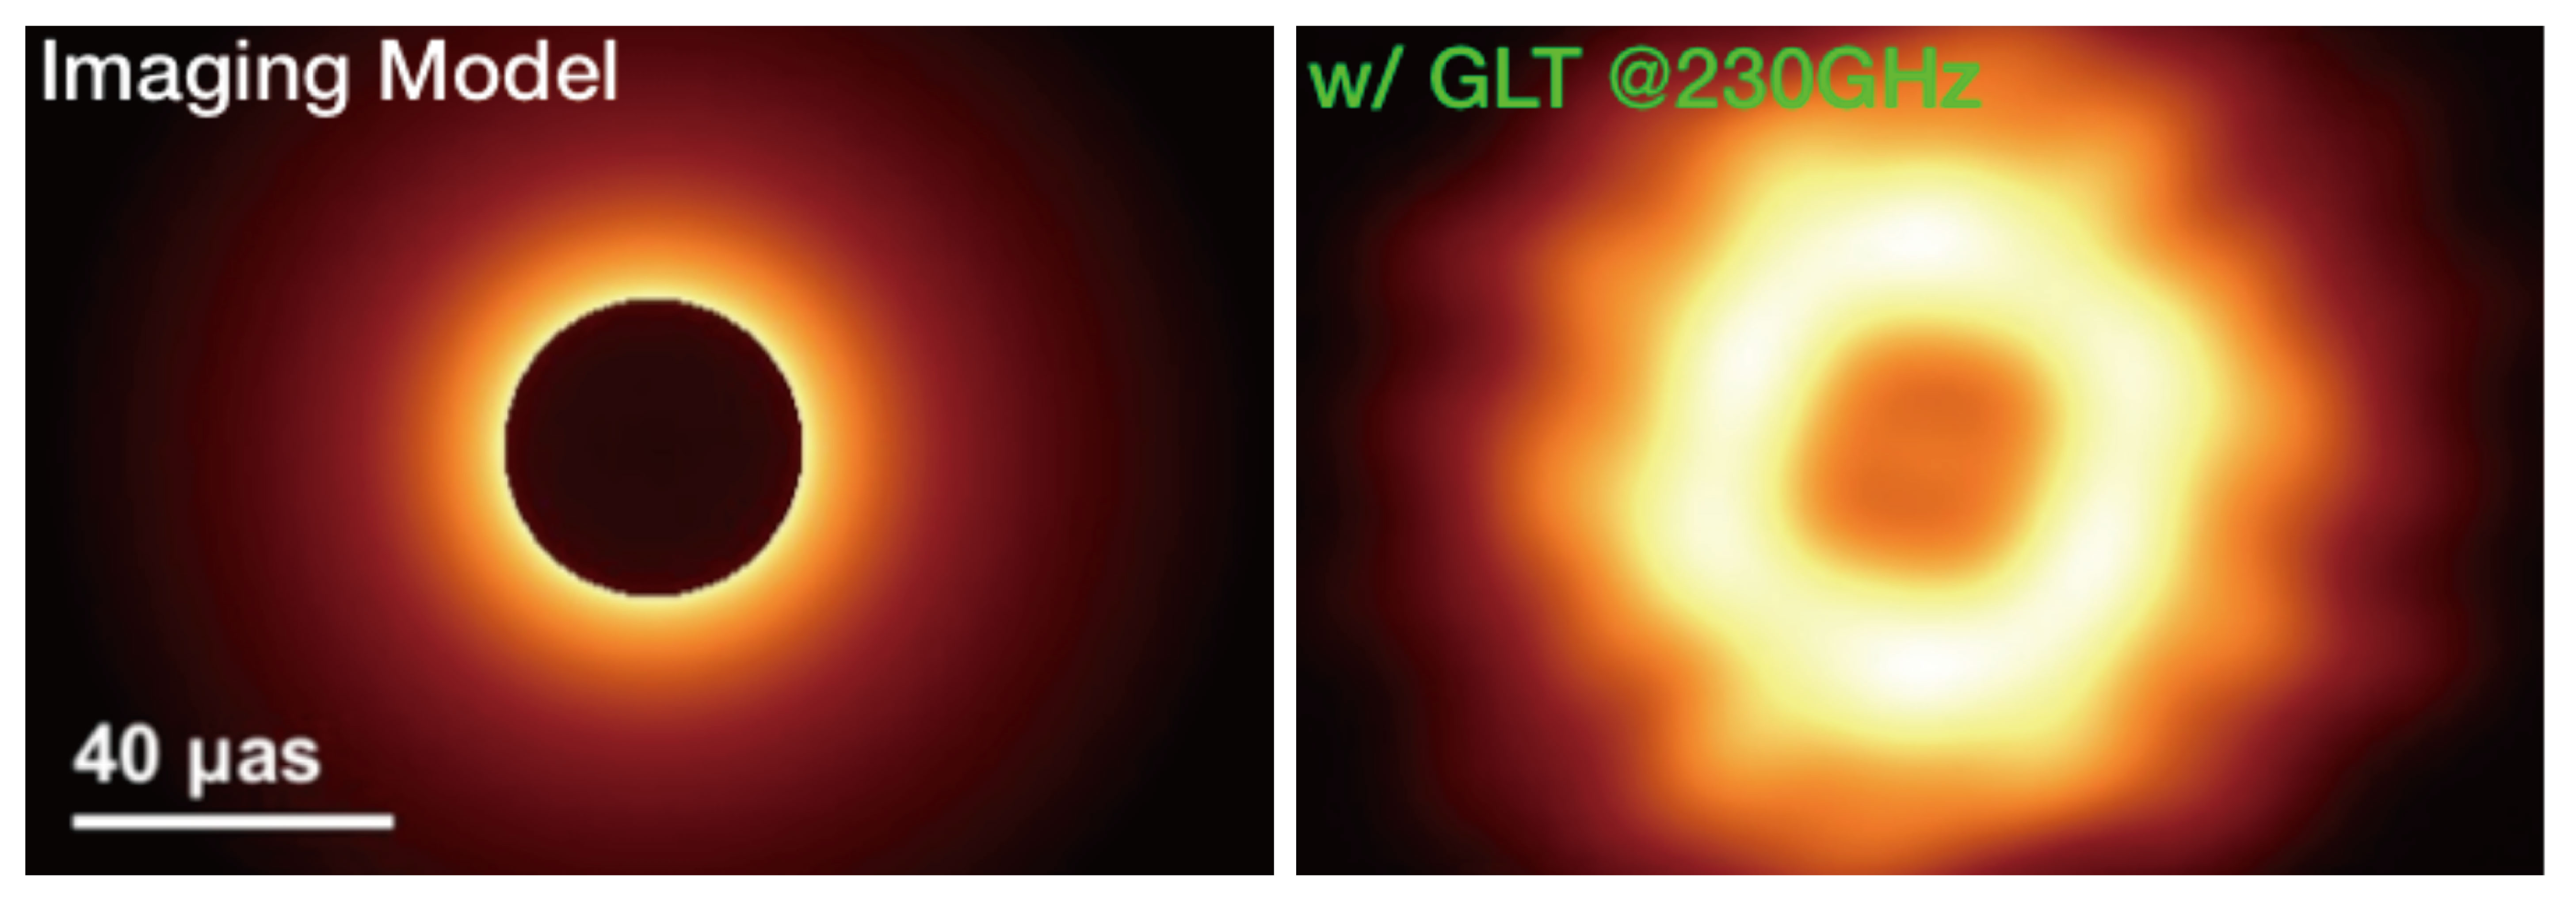 左圖為電腦模擬 M87 黑洞陰影，右圖是次毫米波特長基線干涉儀在格陵蘭望遠鏡加入後，在較高頻段 (230GHz) 可望取得的 M87 黑洞陰影。影像解析度為 40 微角秒。圖│中研院天文所 VLBI / GLT 團隊